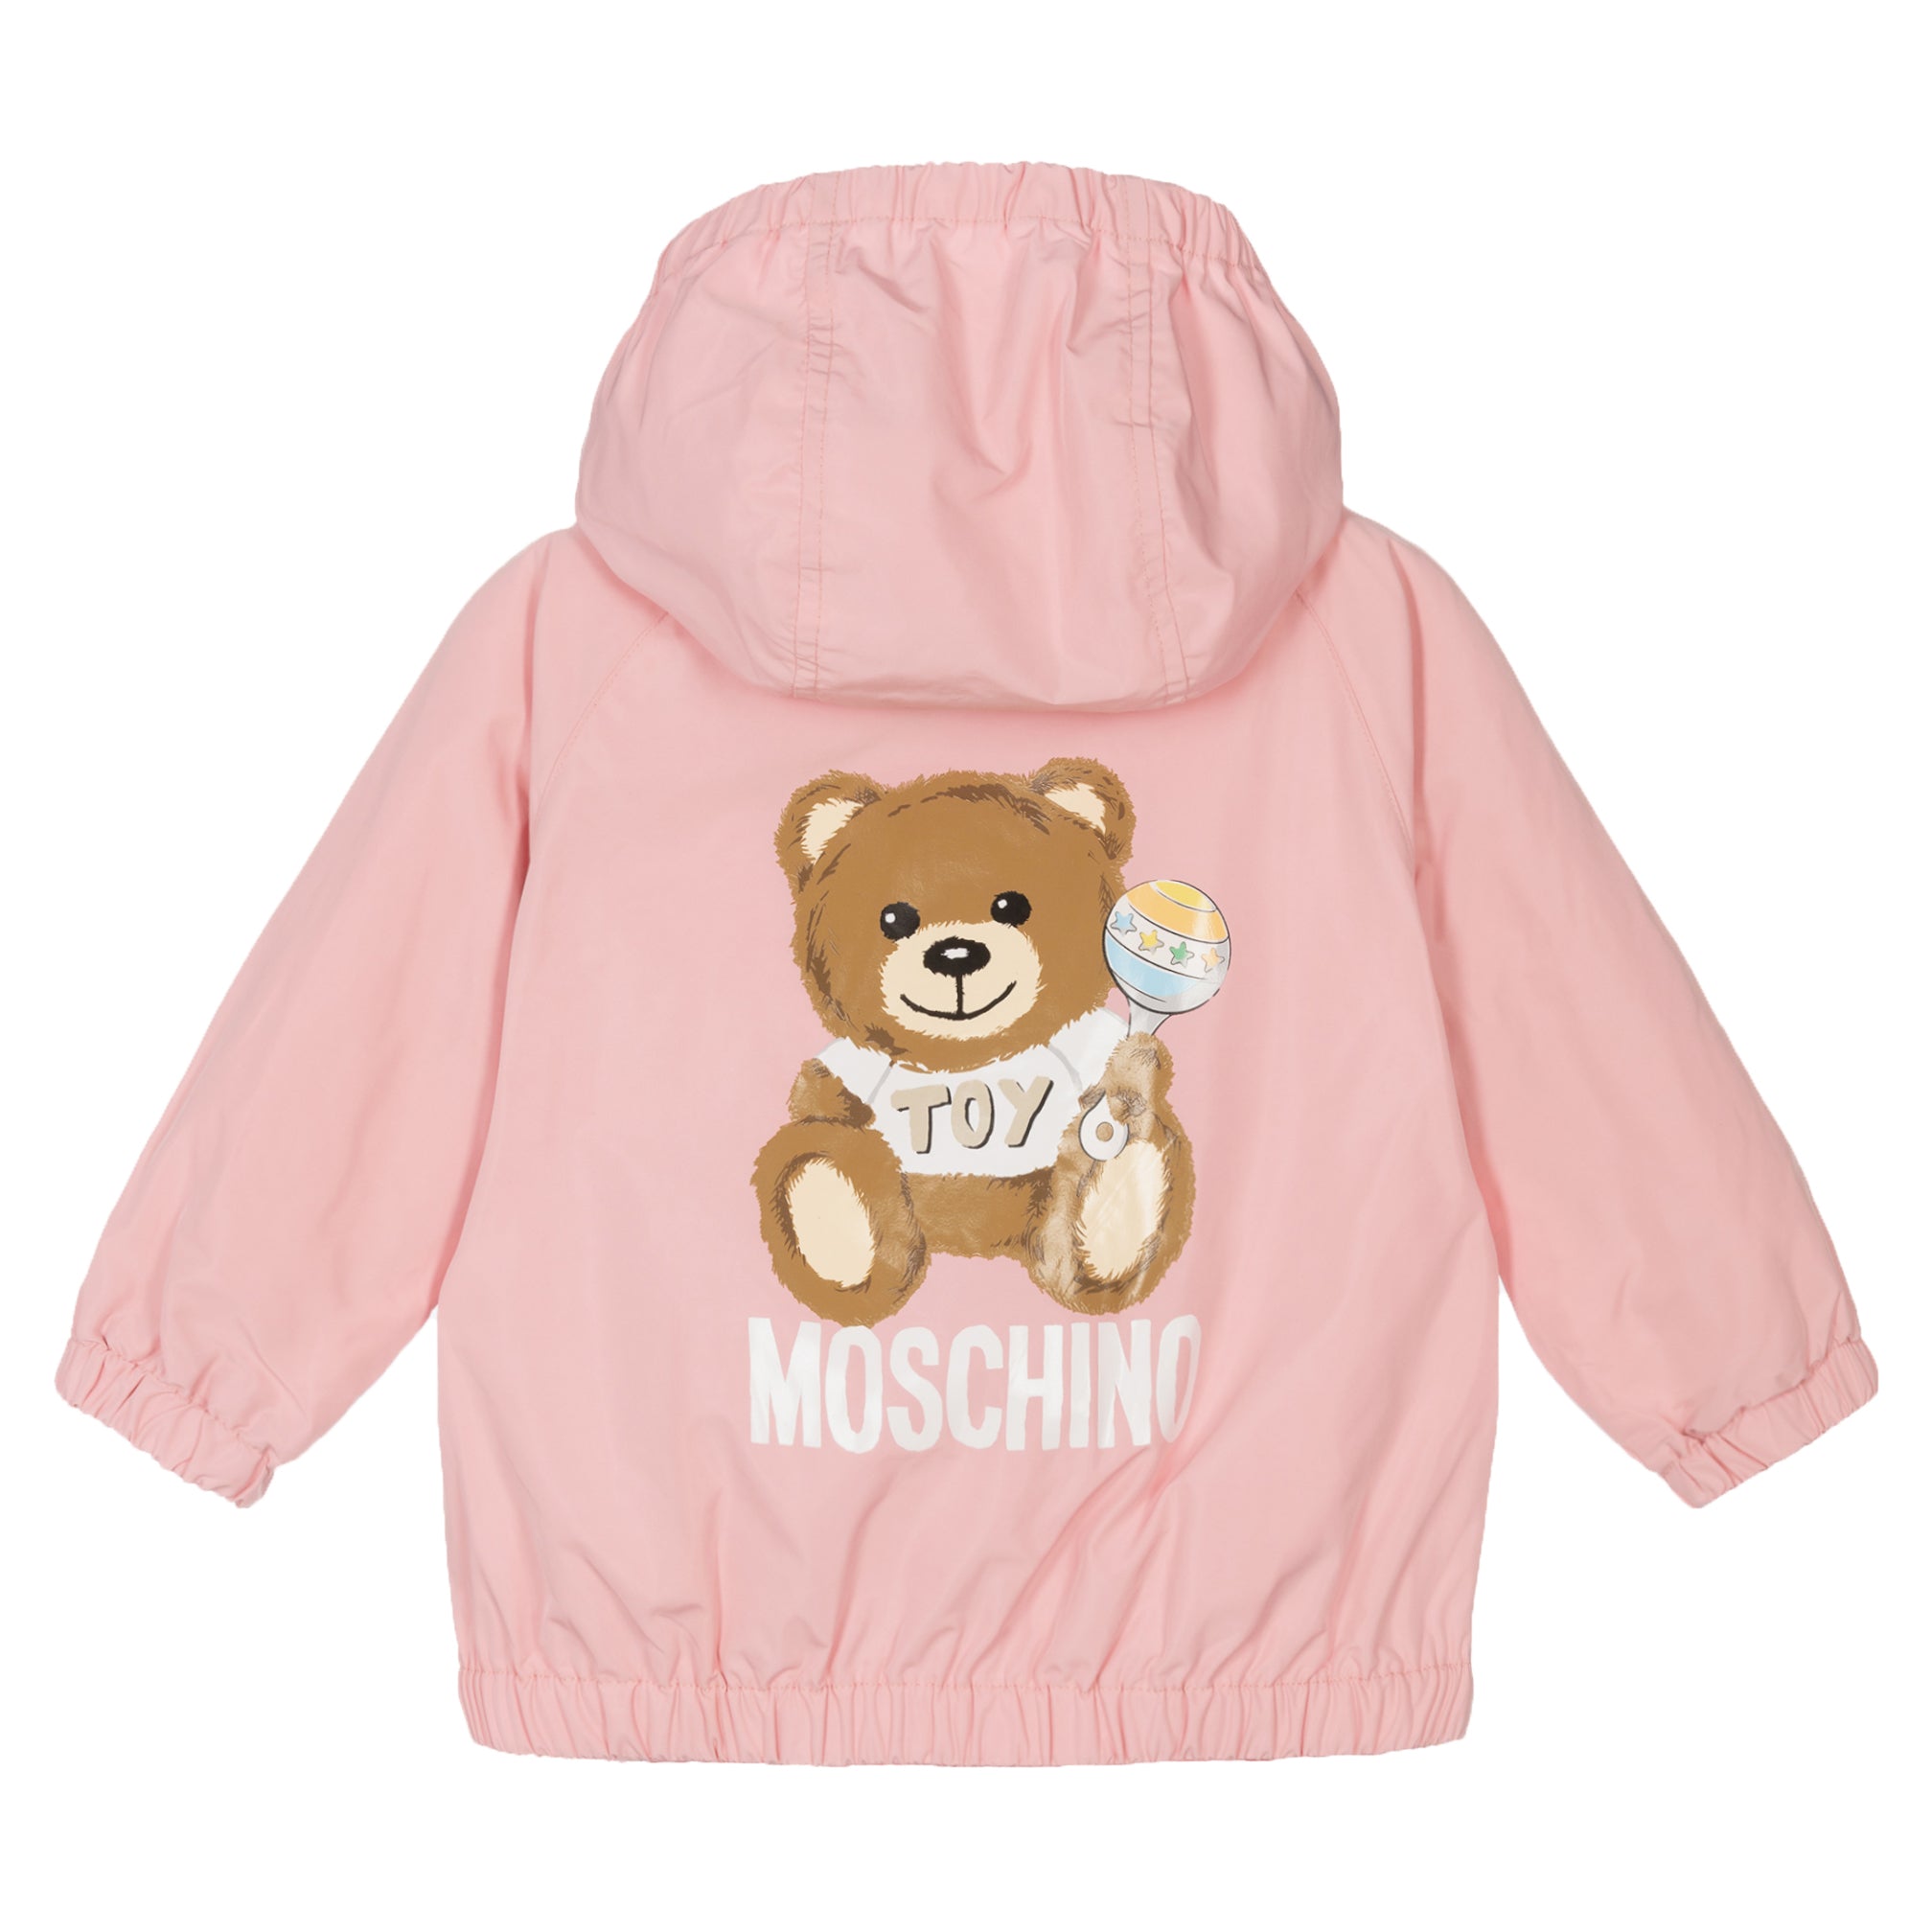 Moschino Baby Girls Pink Windbreaker